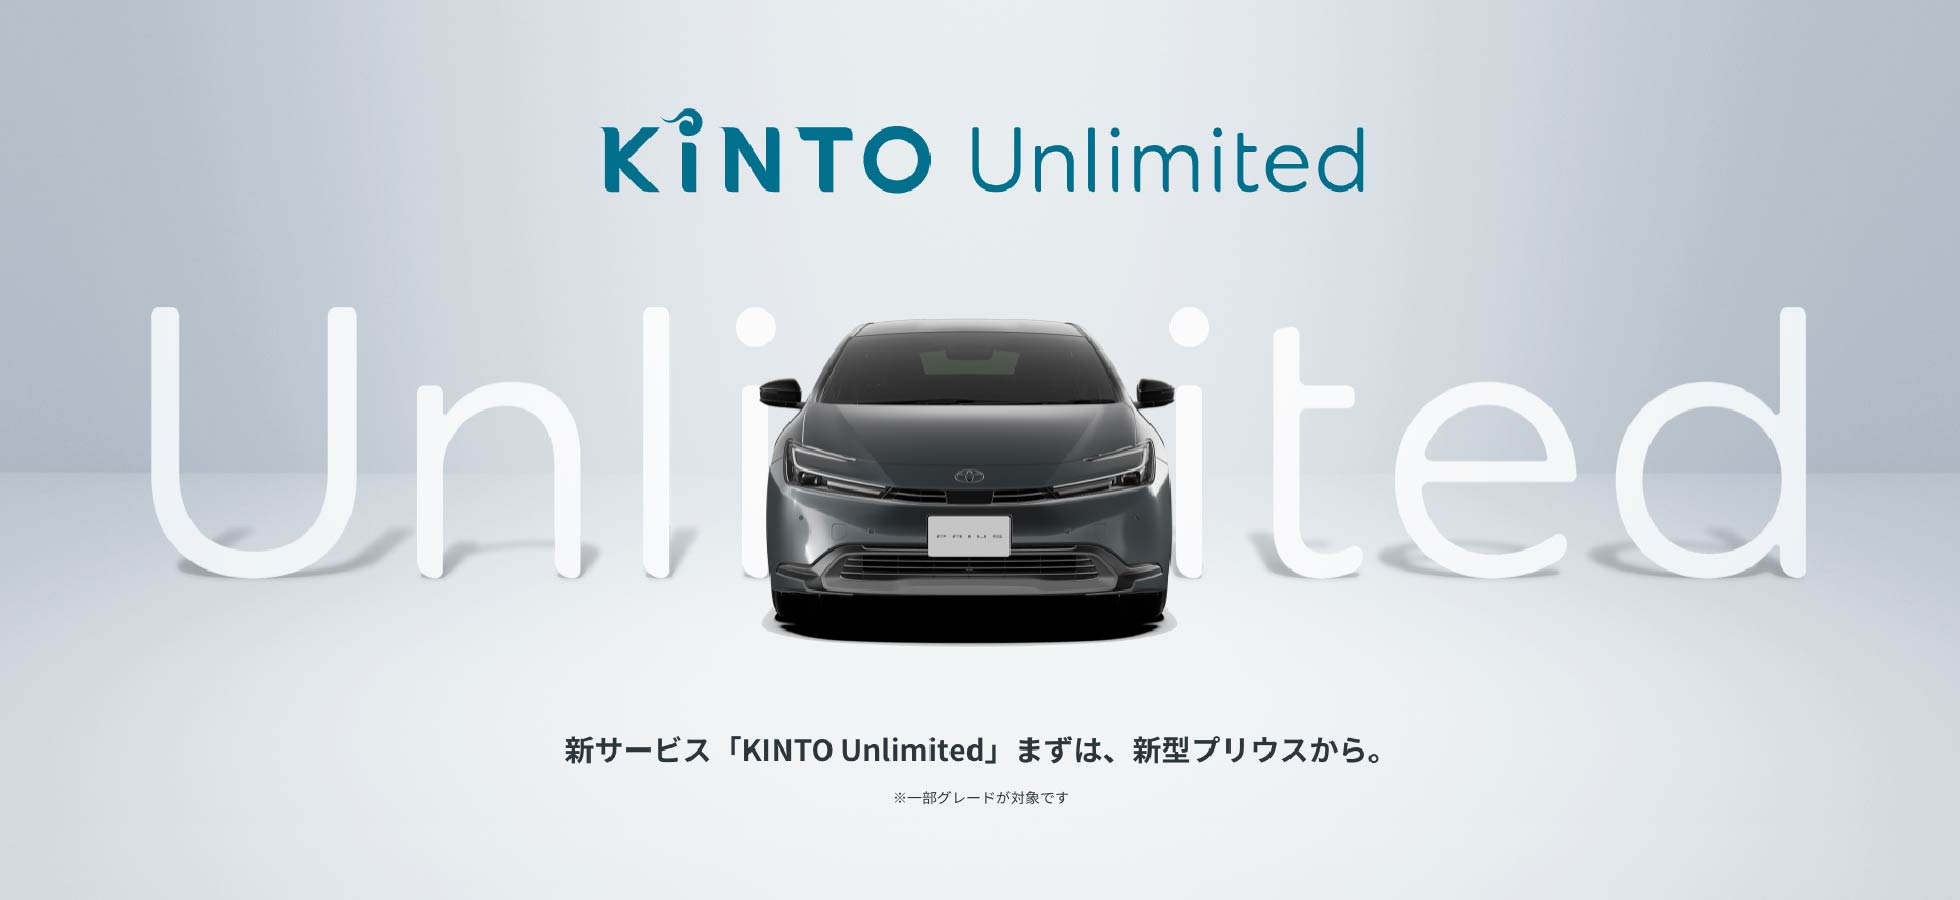 新サービス「KINTO Unlimited」まずは、新型プリウスから。